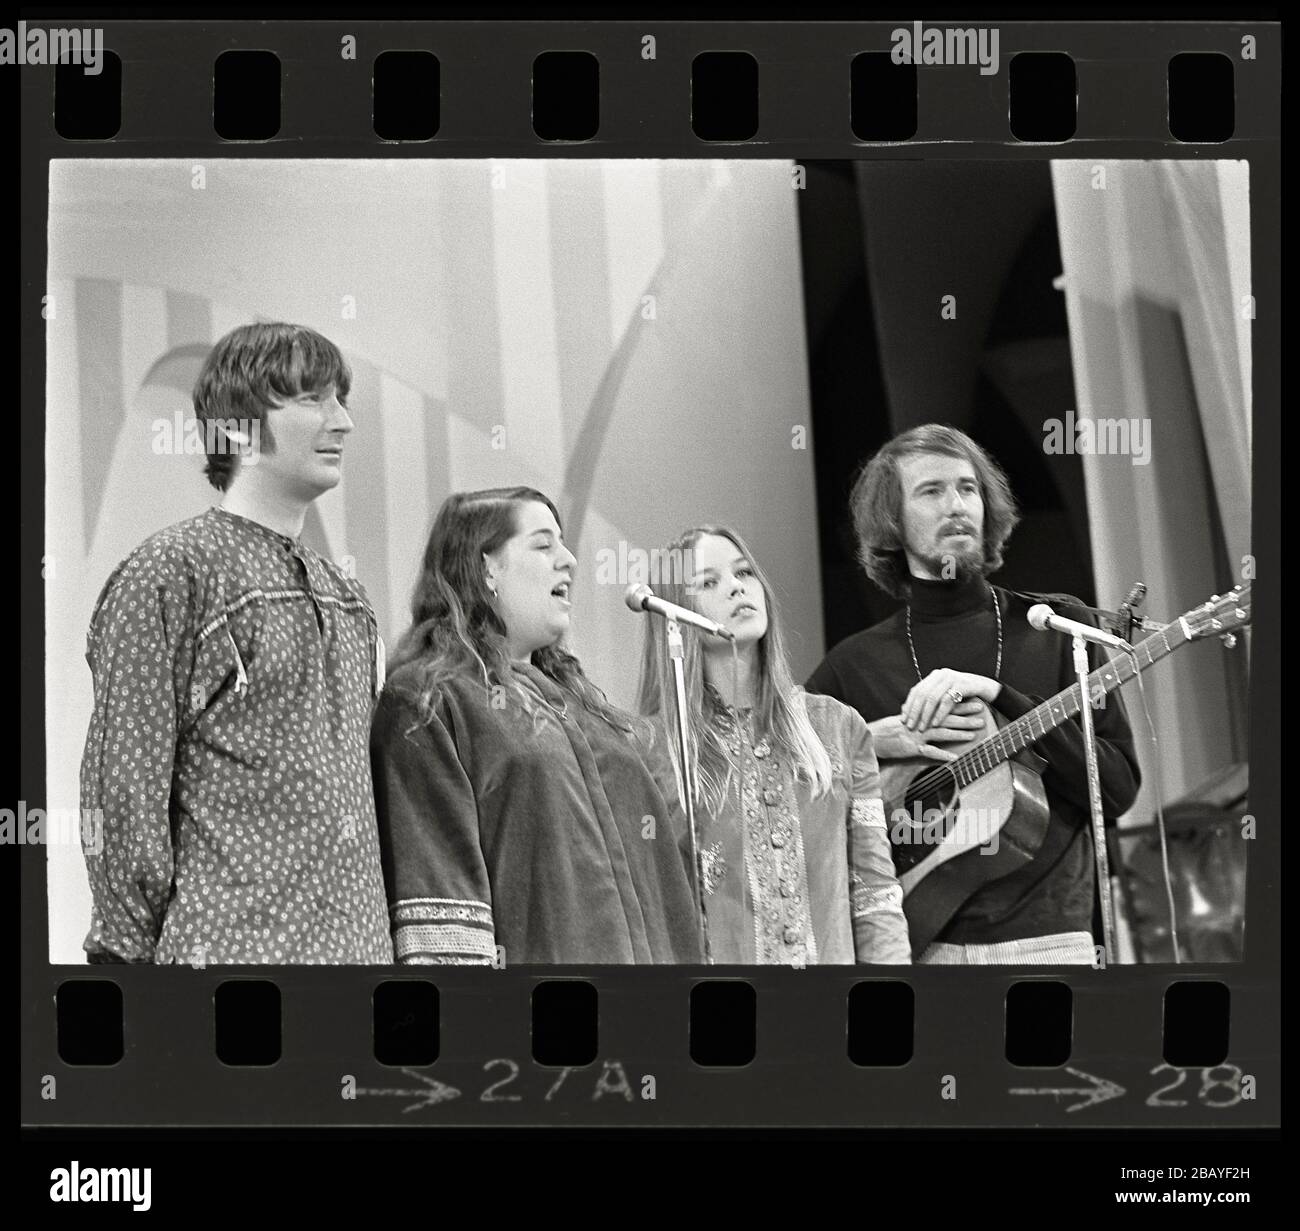 Singende Popgruppe, Mamas & Papas. Cass Elliot, Denny Doherty, John Phillips und Michelle Phillips, 1967. Bild von 35 mm negativ. Stockfoto